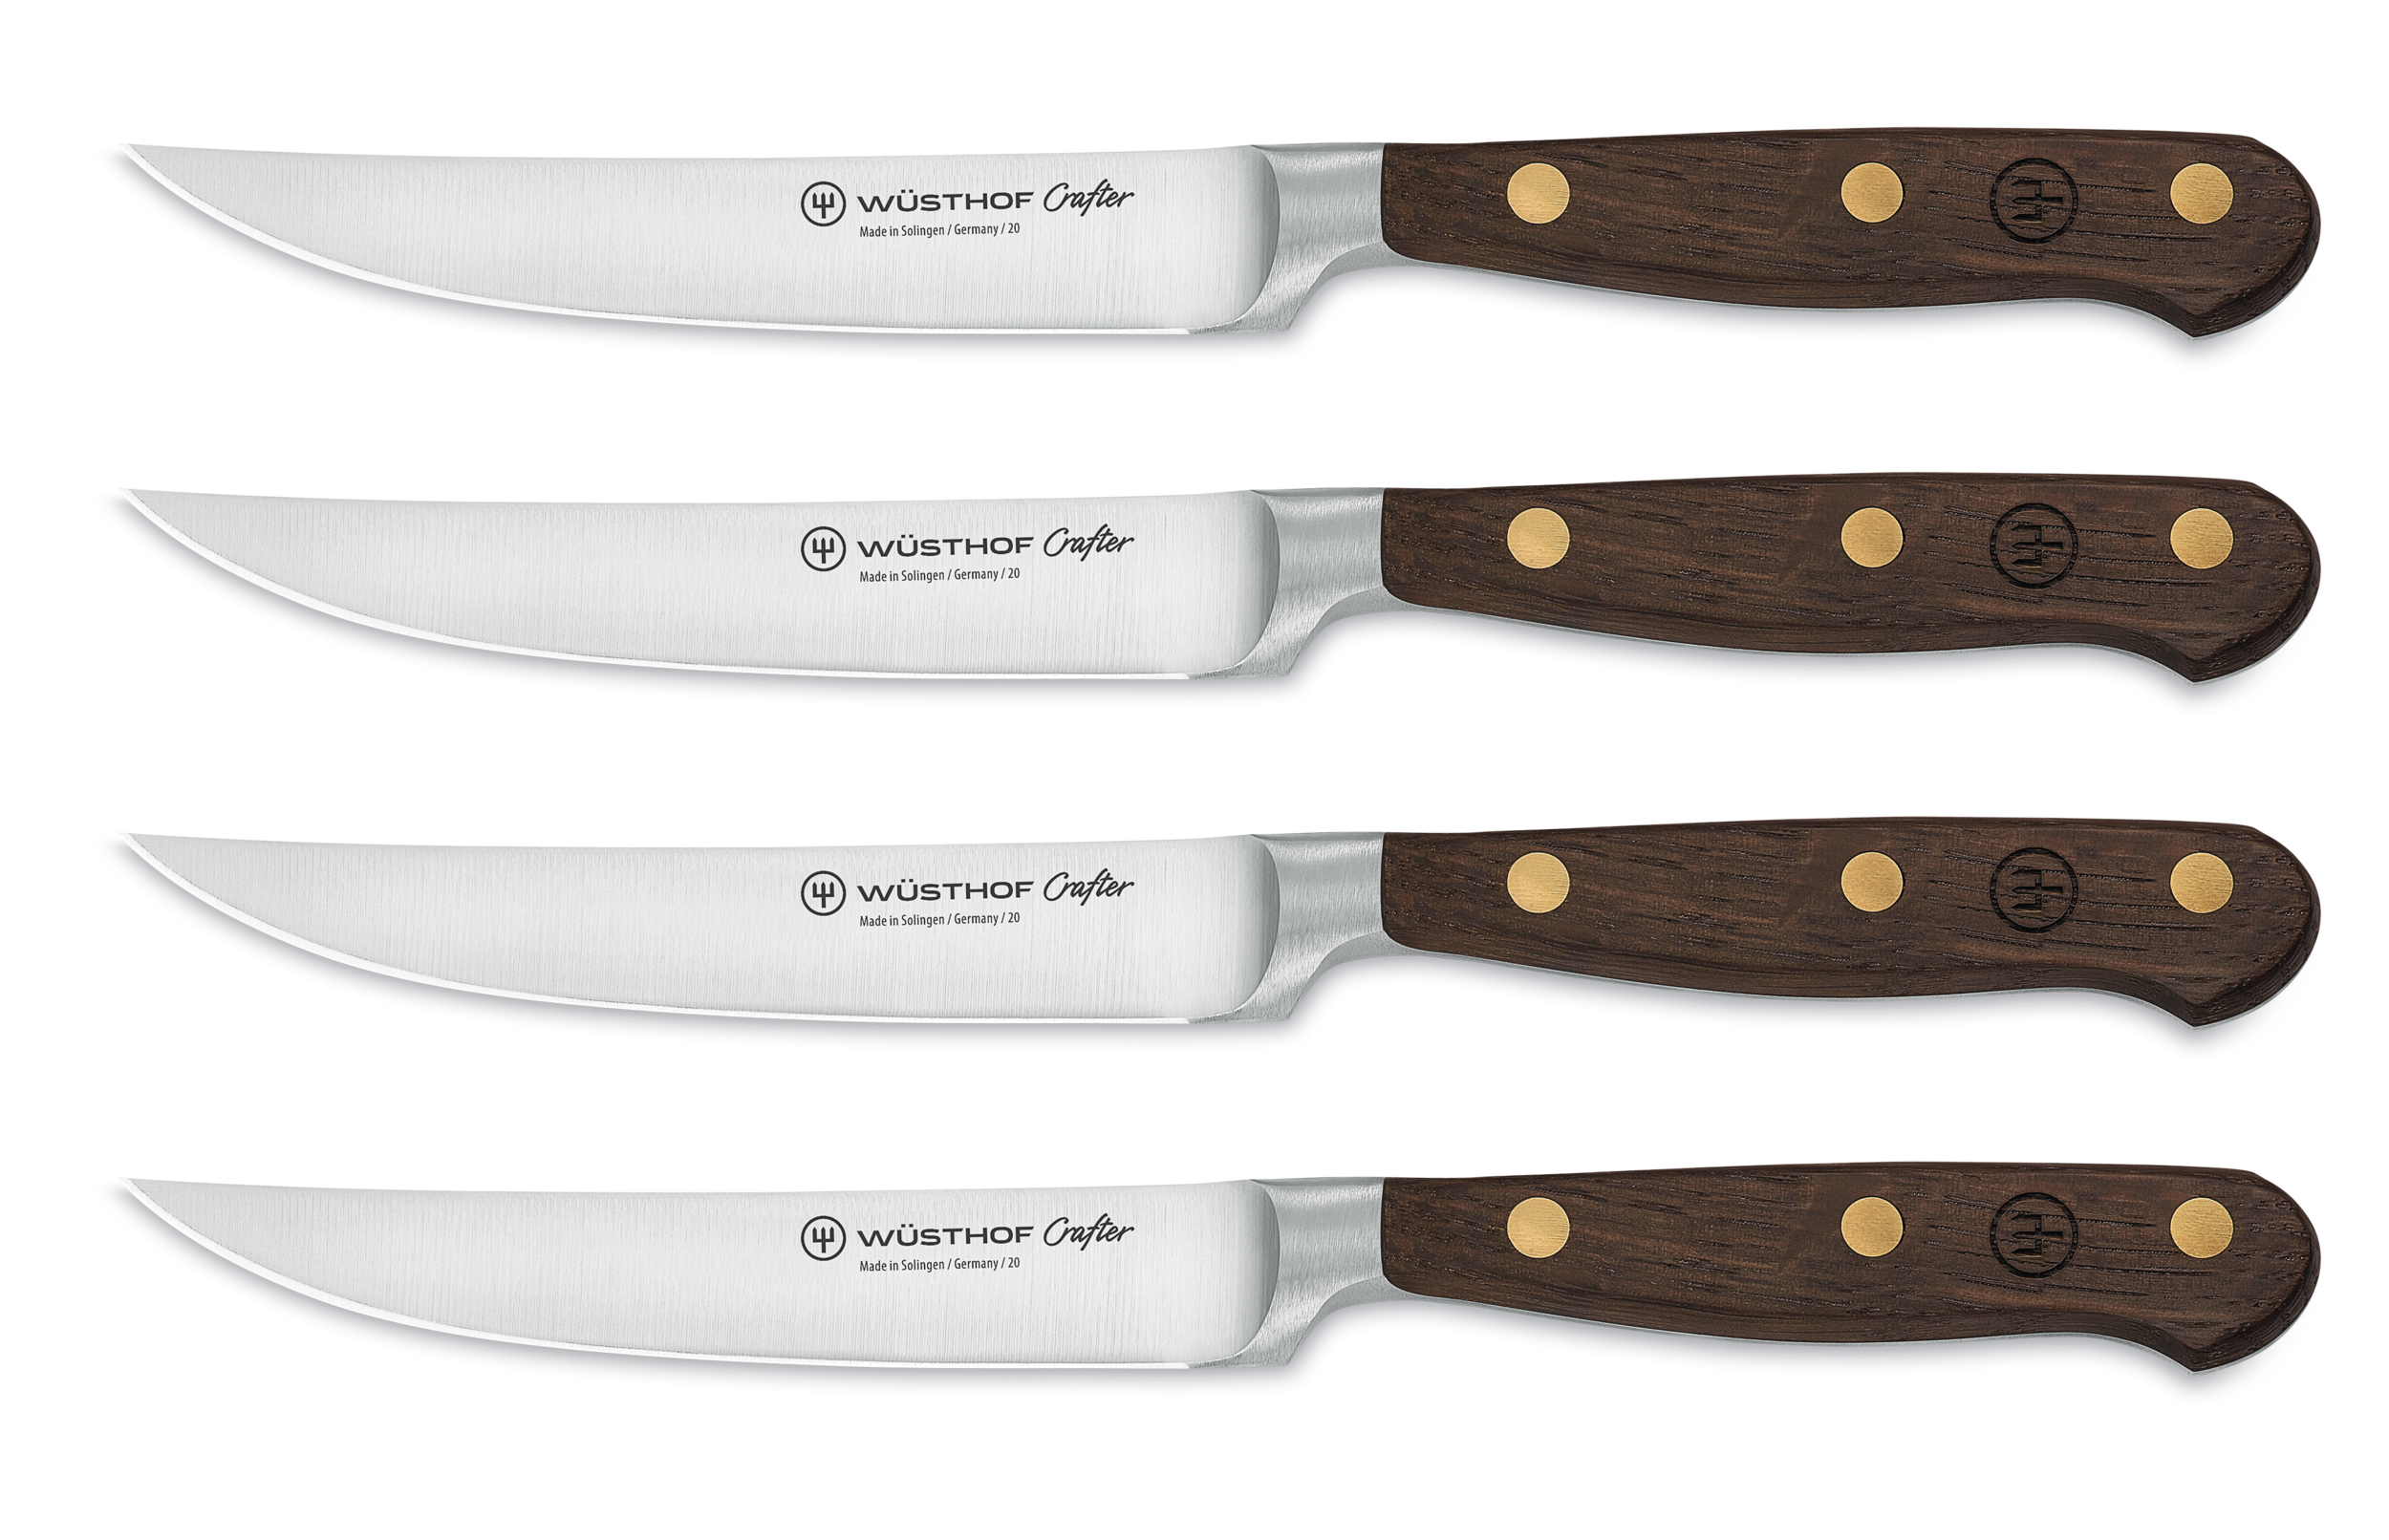 Steakmesser Set mit 4 Messern 9738 Das Crafter Steakmesser Set von Wüsthof enthält 4 edle Steakmesser. 